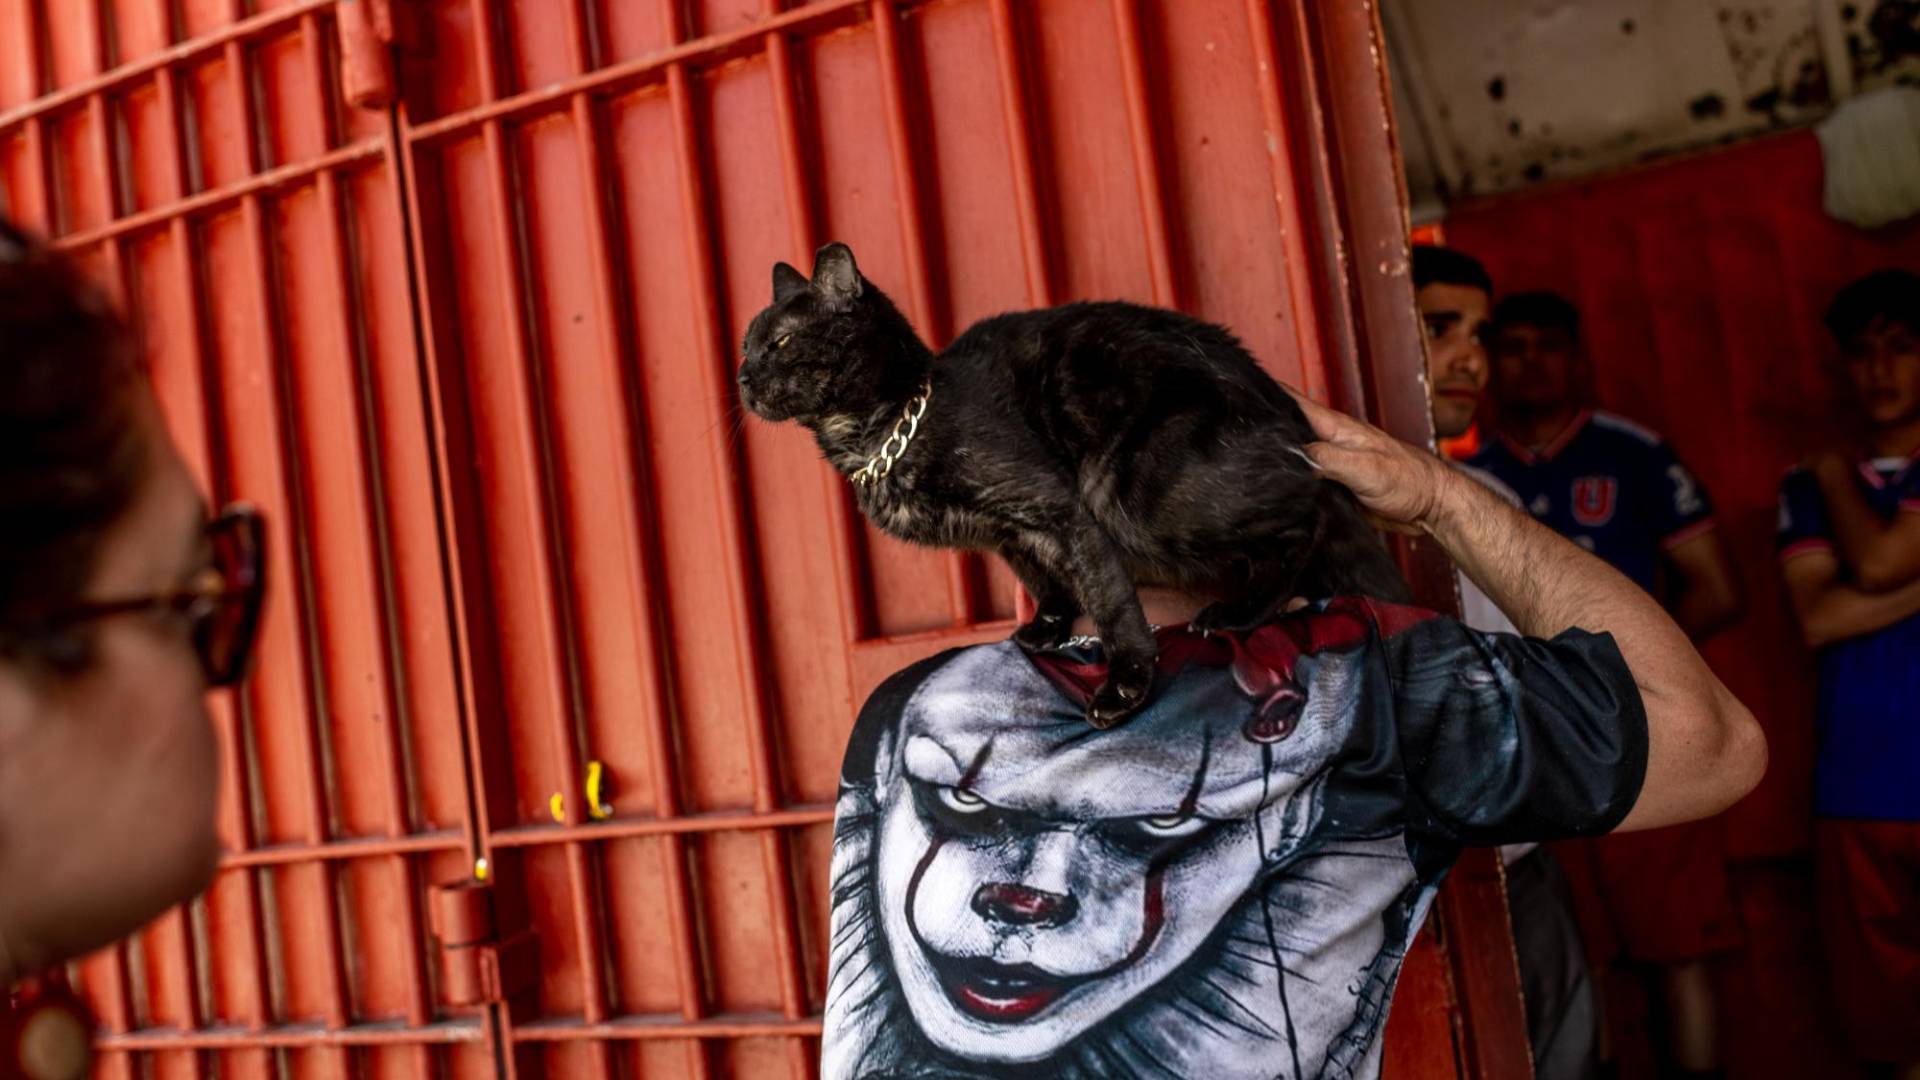 $!La prisión principal en Santiago de Chile tiene 5 mil 600 reos, muchos de los cuales han hallado consuelo cuidando gatos.